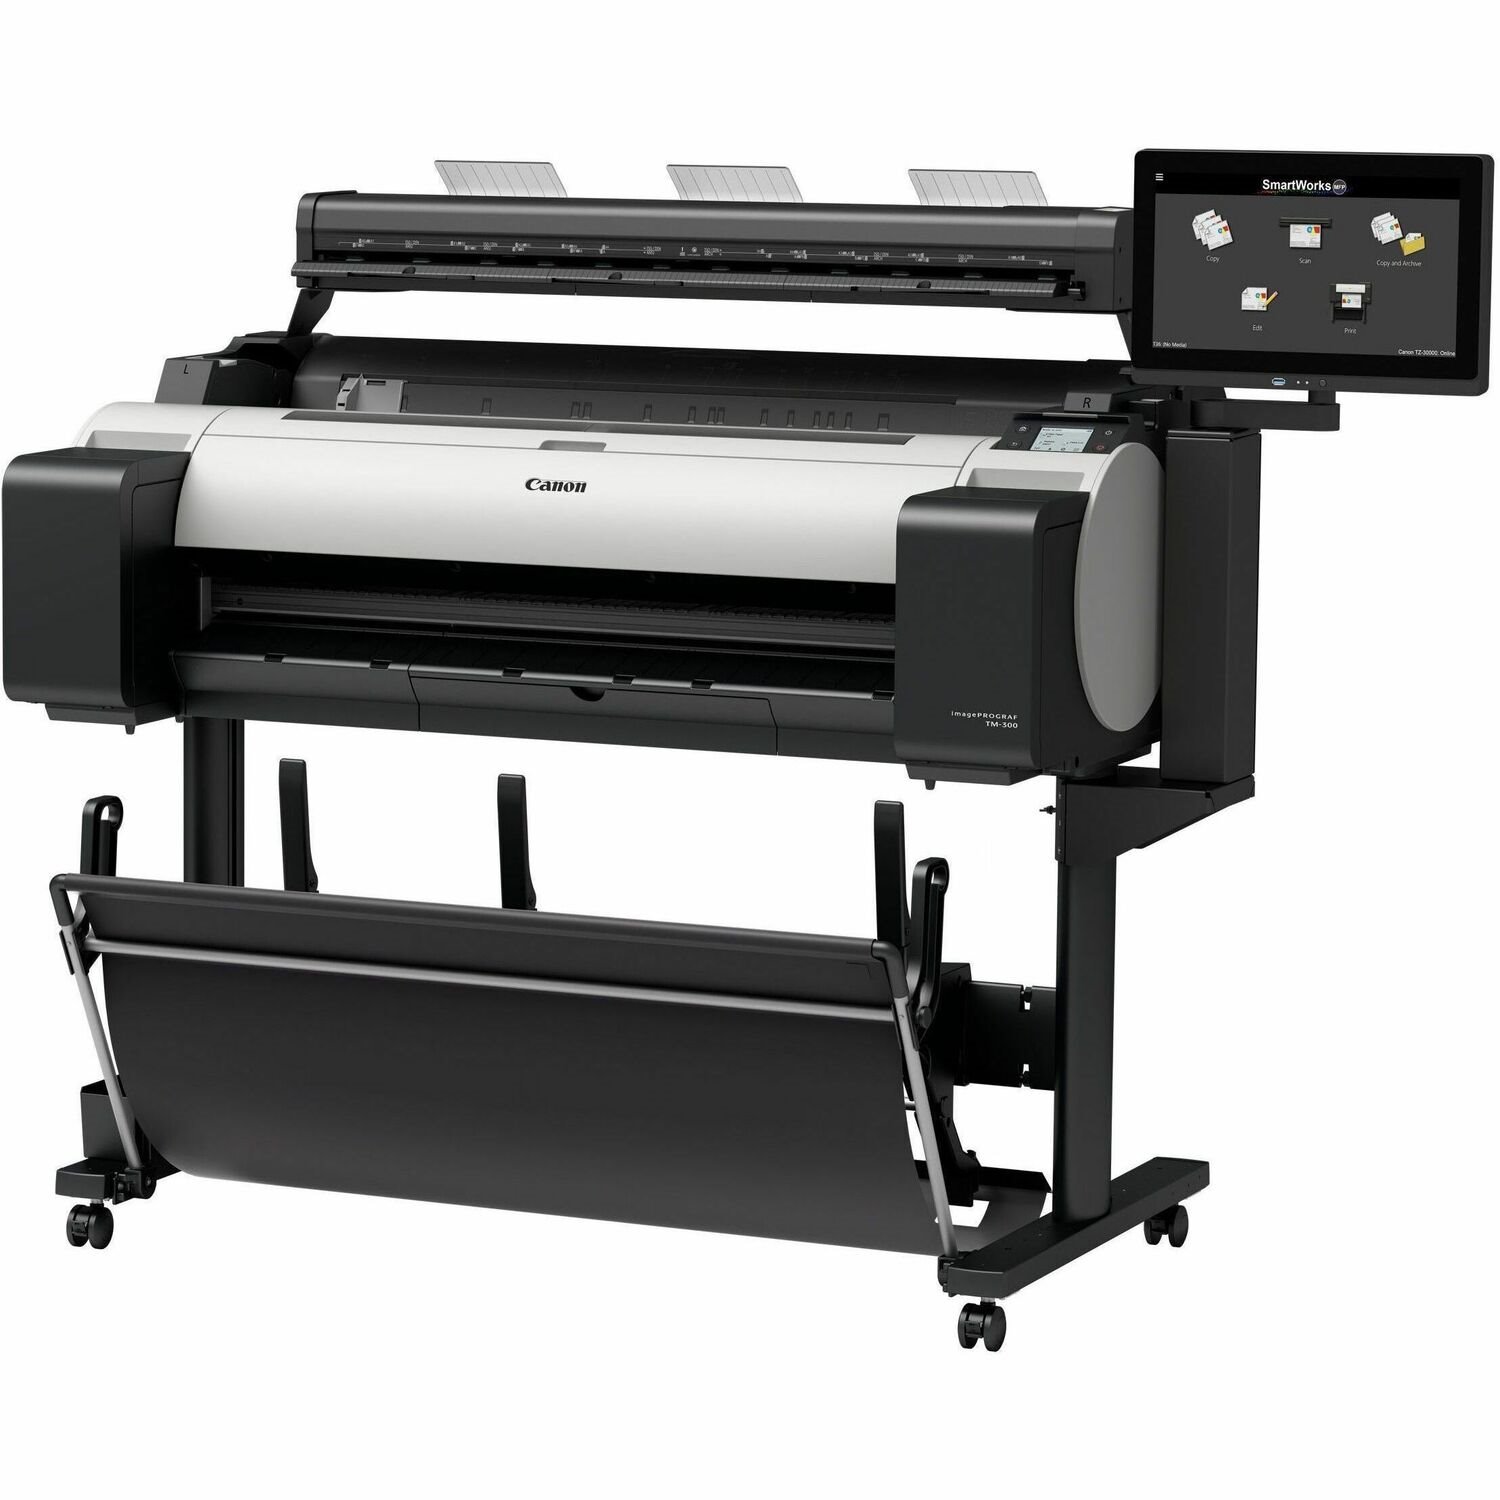 Canon imagePROGRAF TM-300 MFP Z36 Inkjet Large Format Printer - Includes Scanner, Printer - 36" Print Width - Color